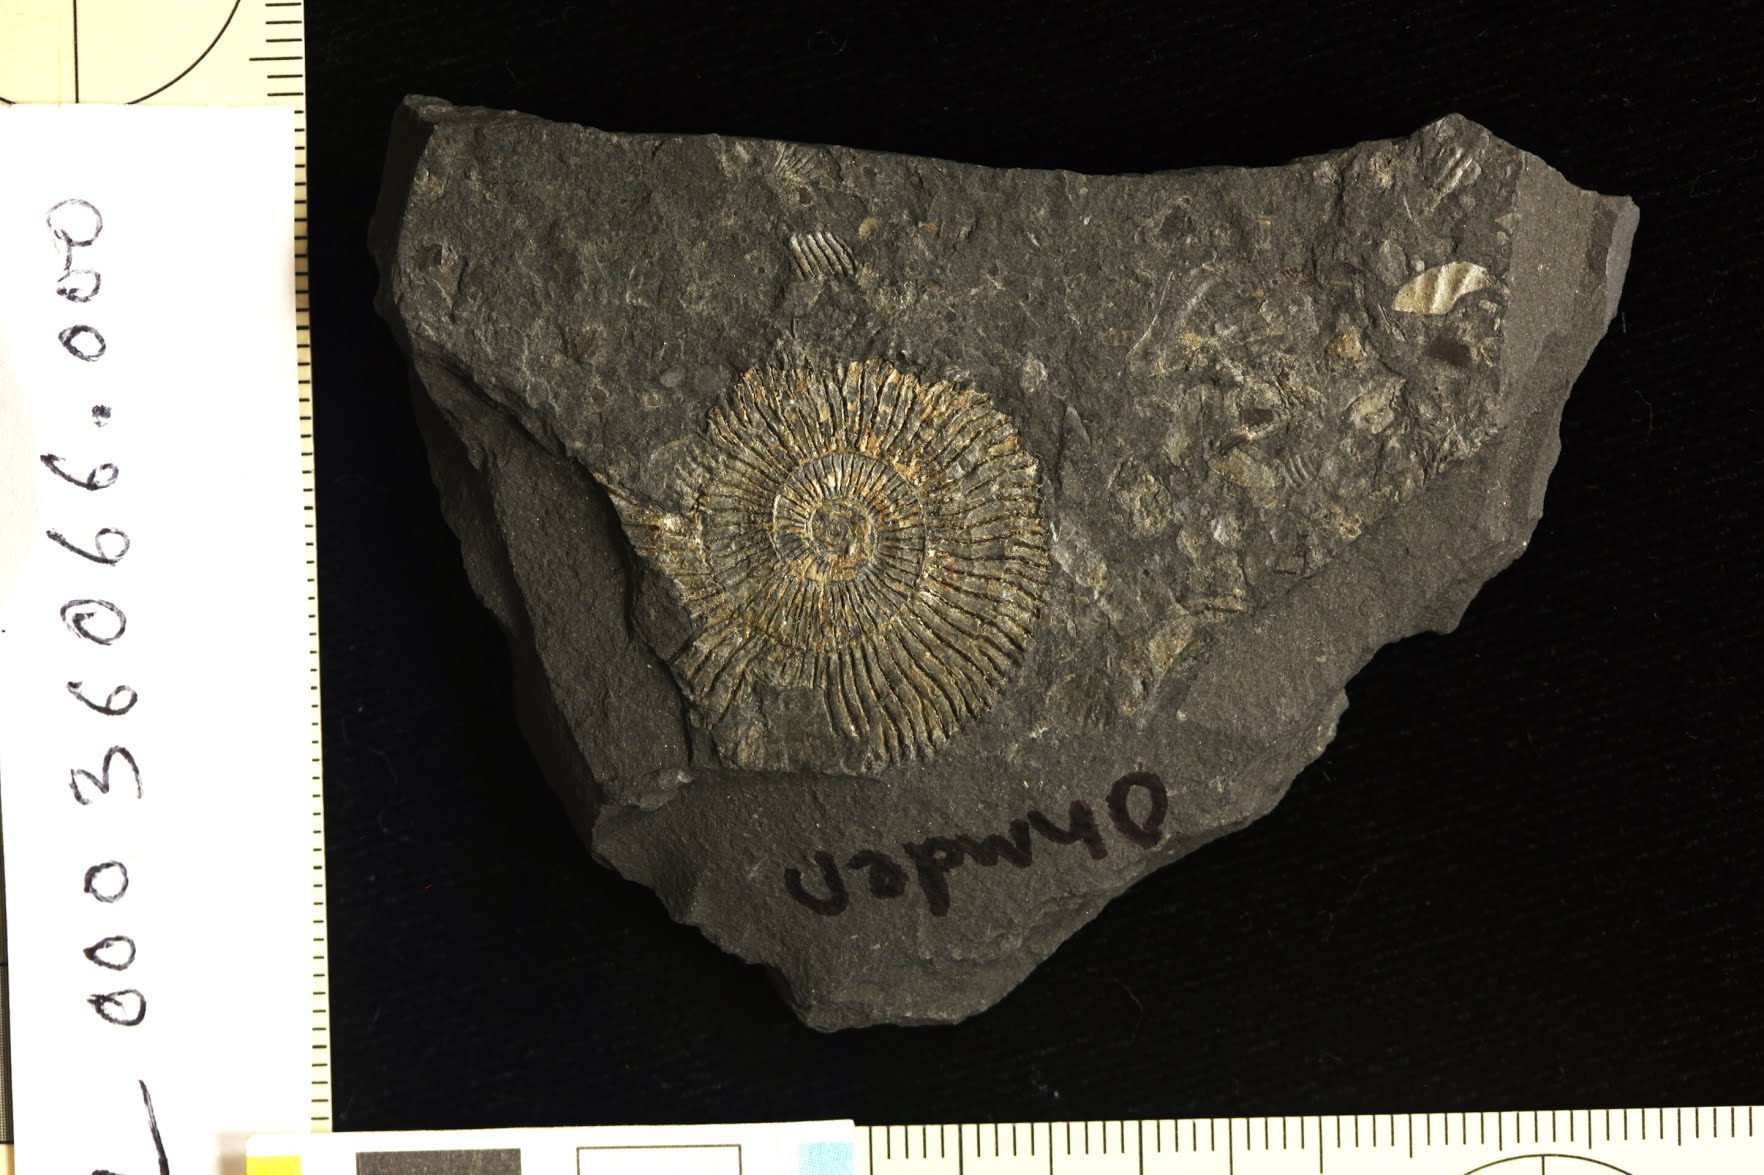 ຟອດຊິວທໍາ Ammonite ຈາກ quarry Ohmden, Posidonia shale lagerstatte.